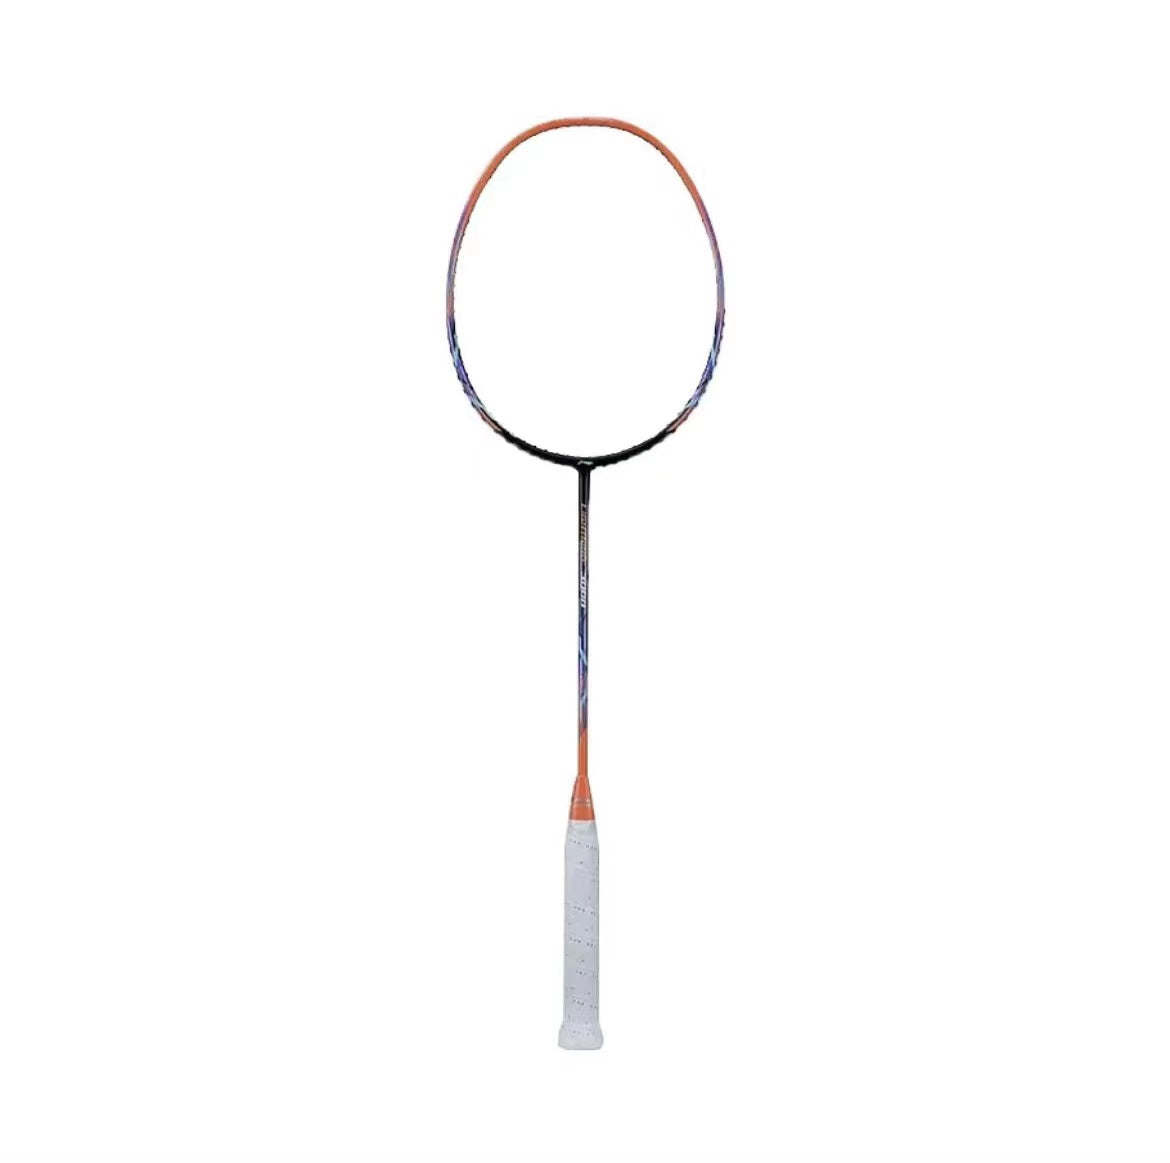 Li-Ning Lightning 3000 Badminton Racket